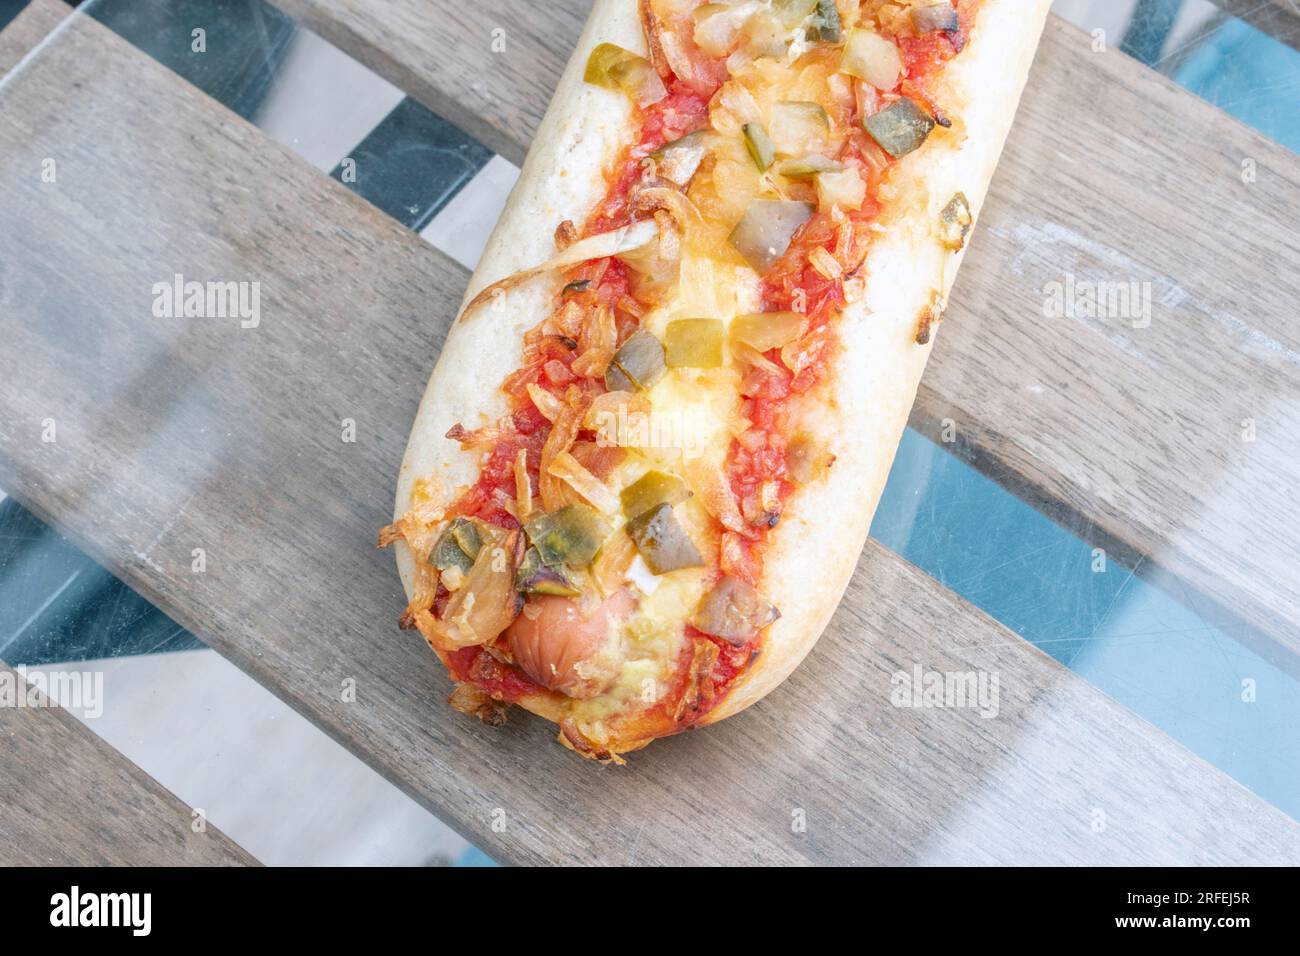 Hot Dog: Un delizioso hot dog pieno di gustosi sottaceti, cipolle fritte e un pizzico di salsa di pomodoro, scattato in una foto appetitosa dall'alto su una g. Foto Stock